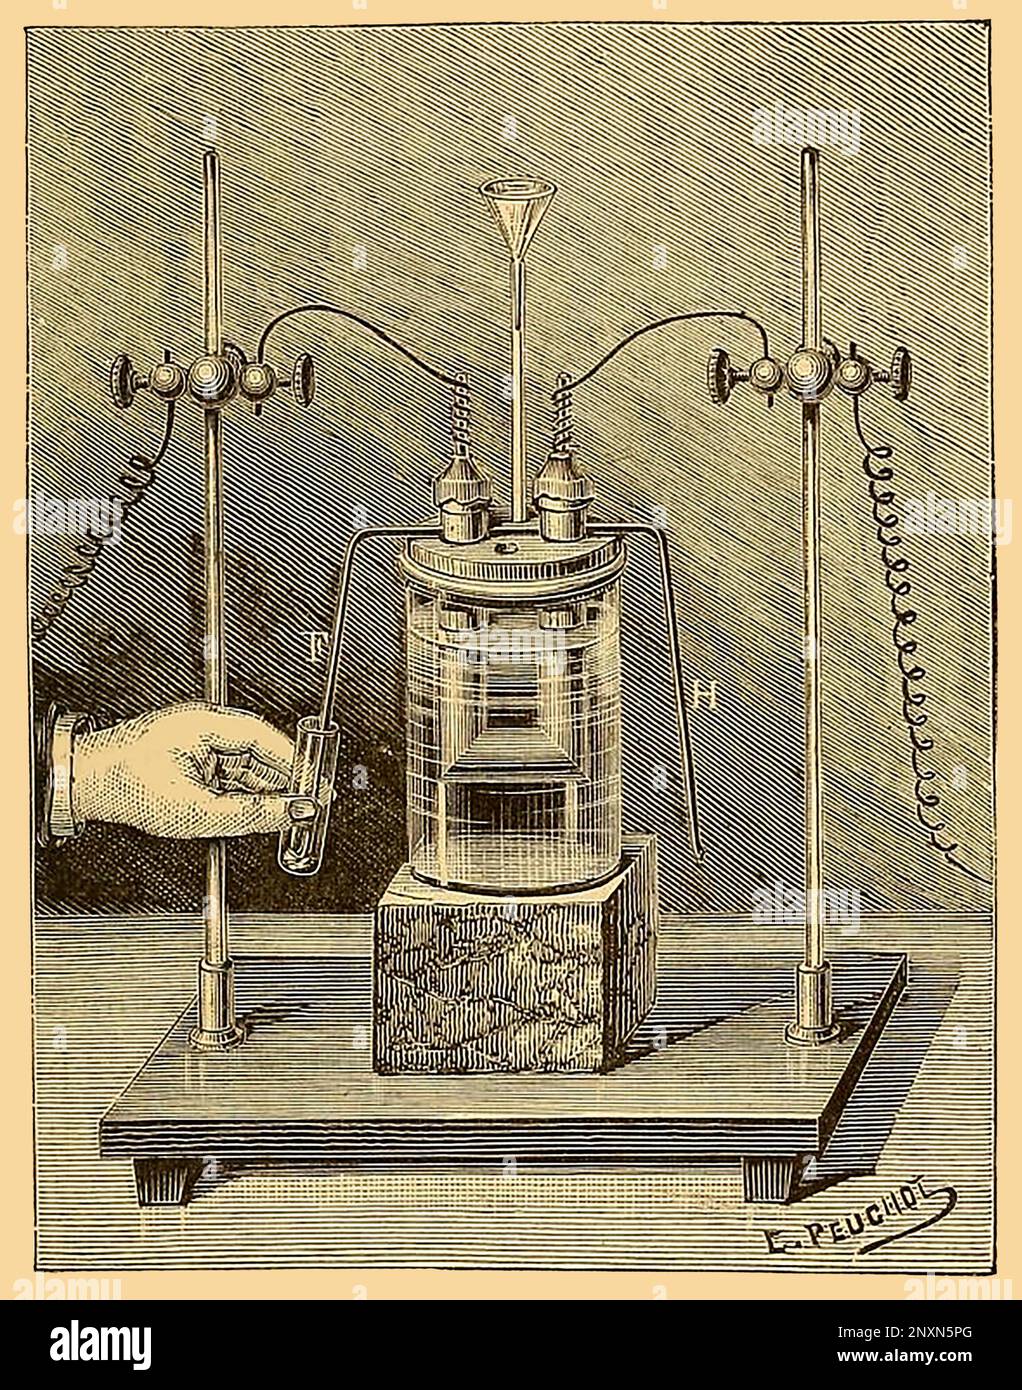 Henri Moissan (1852-1907) est un chimiste et pharmacien français qui a remporté le prix Nobel de chimie en 1906 pour son travail dans l'isolation de l'élément chimique fluor de ses composés, ce qu'il a fait en 1886. Illustration de 1887 par E. Peuchot. Banque D'Images